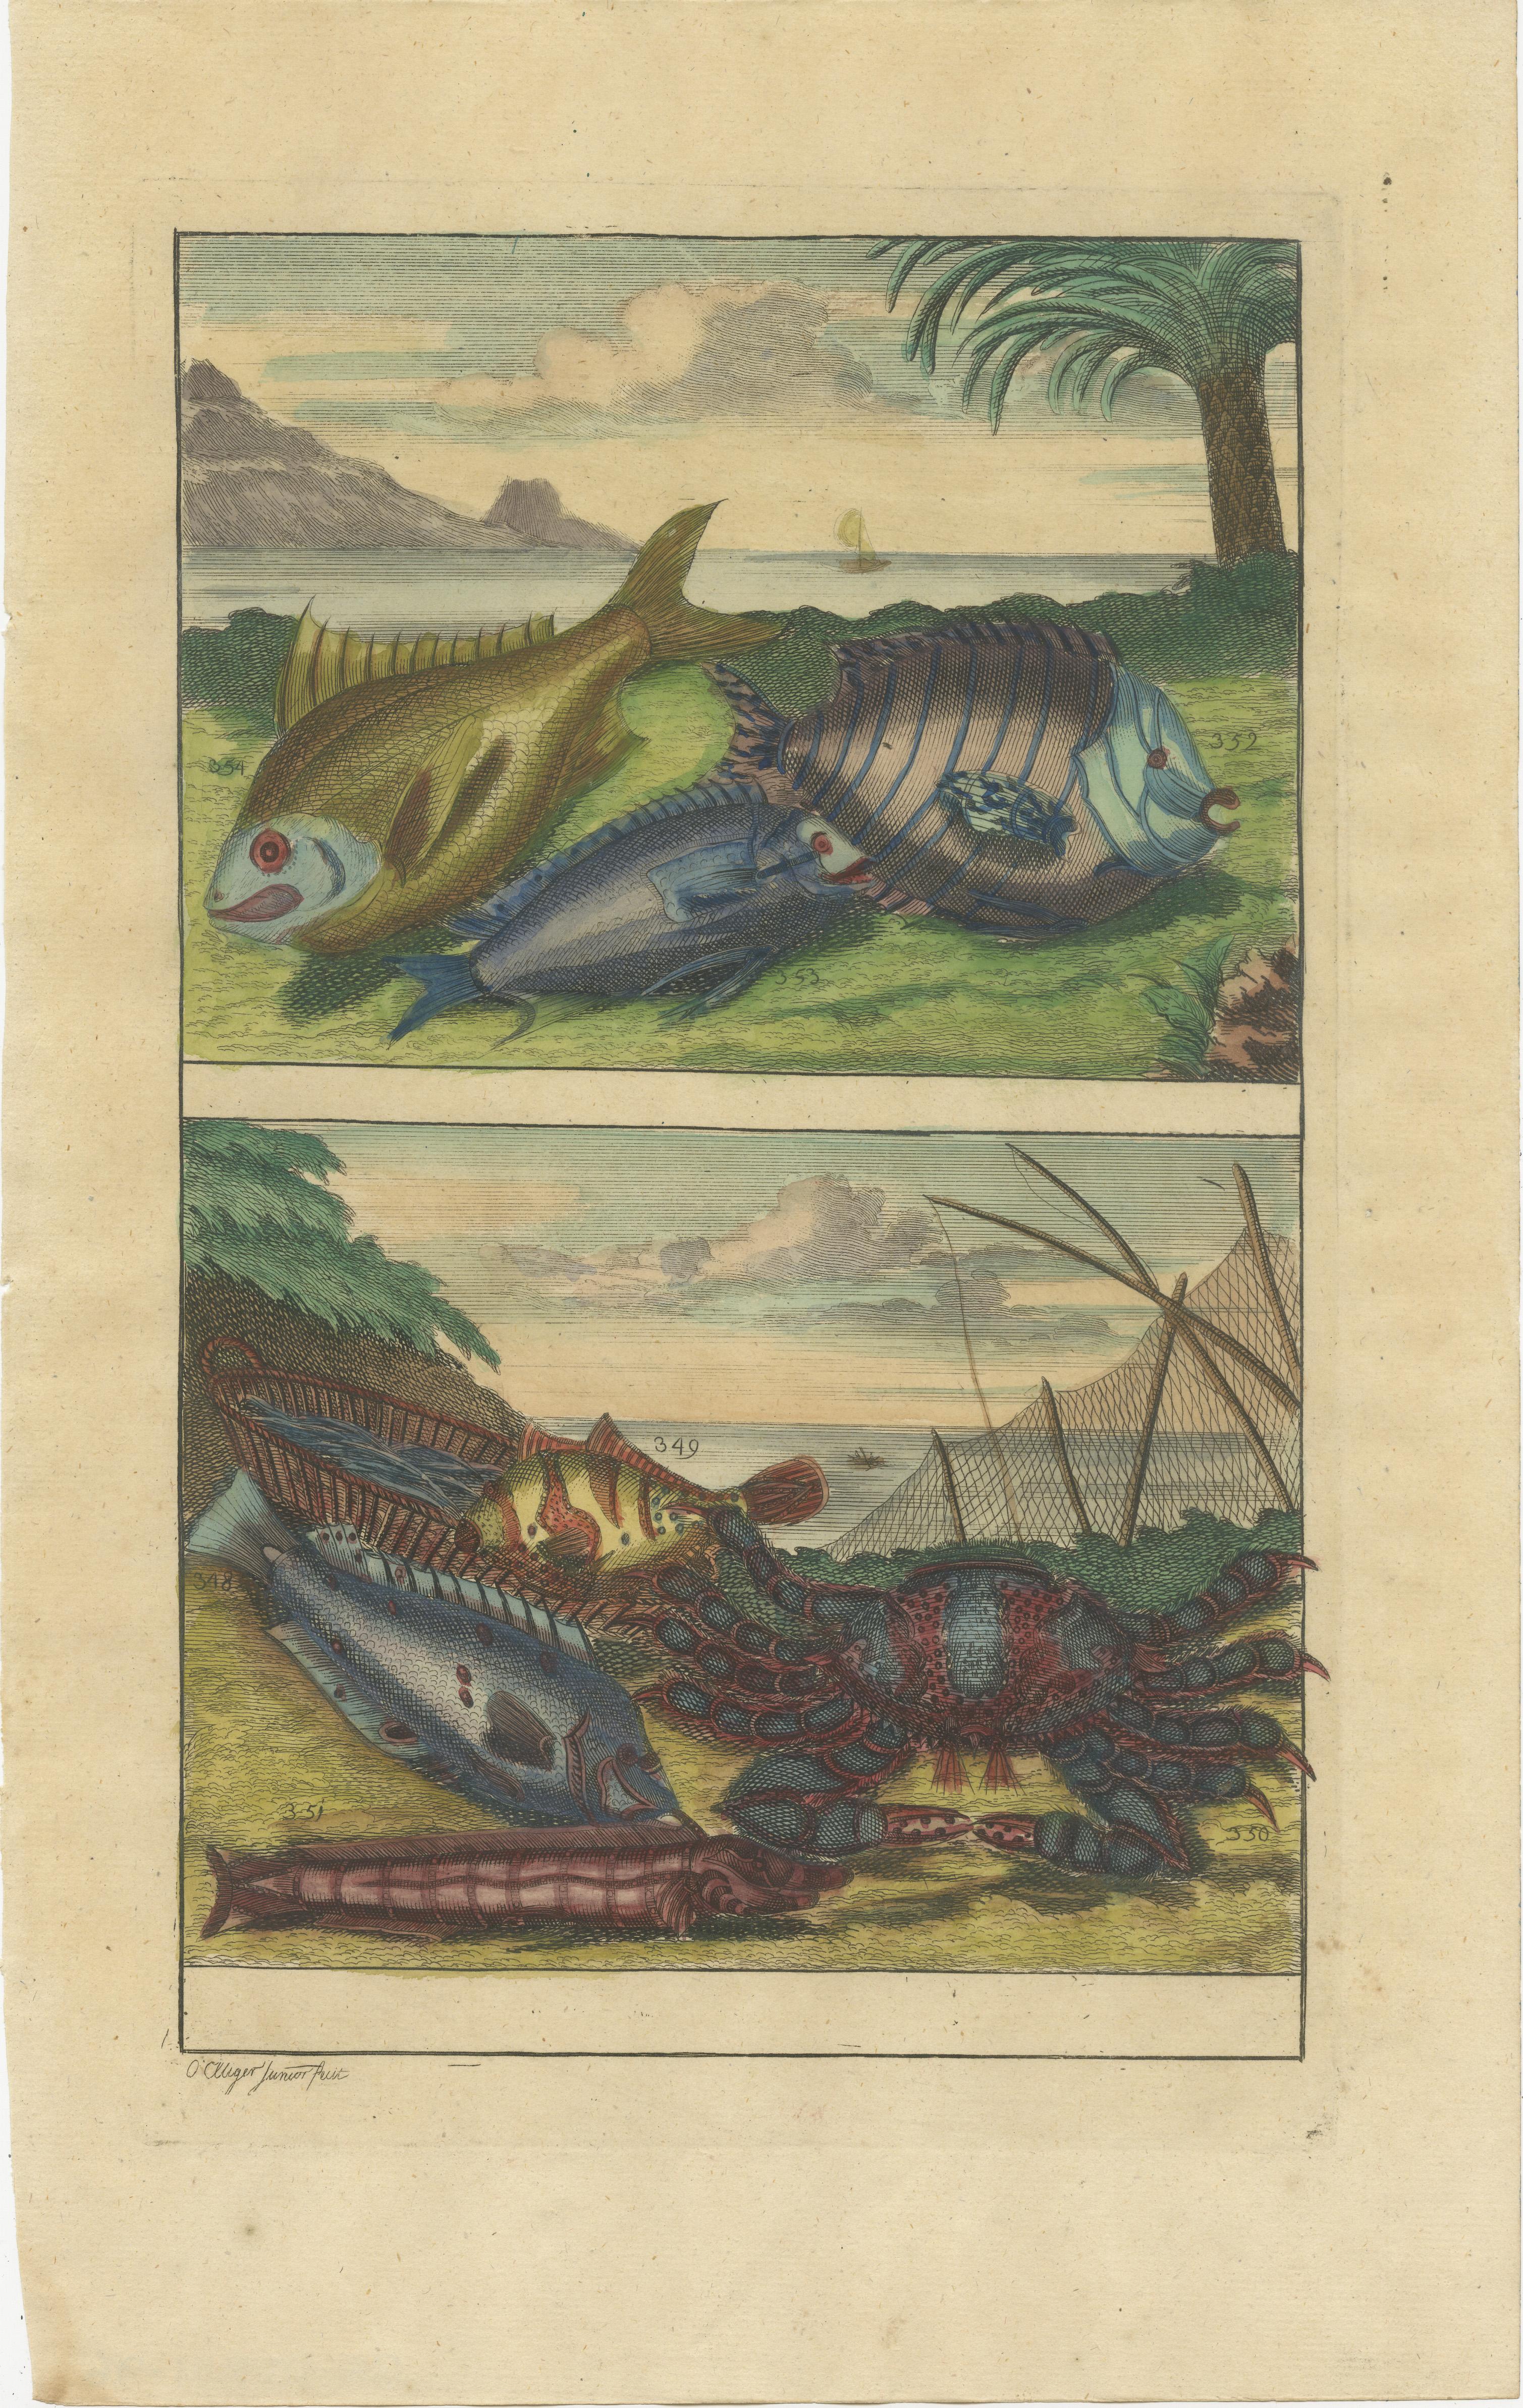 Zwei antike Drucke von verschiedenen Fischen und Krustentieren. Dieser Druck stammt aus 'Oud en Nieuw Oost-Indiën' von F. Valentijn.

François Valentyn oder Valentijn (17. April 1666 - 6. August 1727) war ein niederländischer calvinistischer